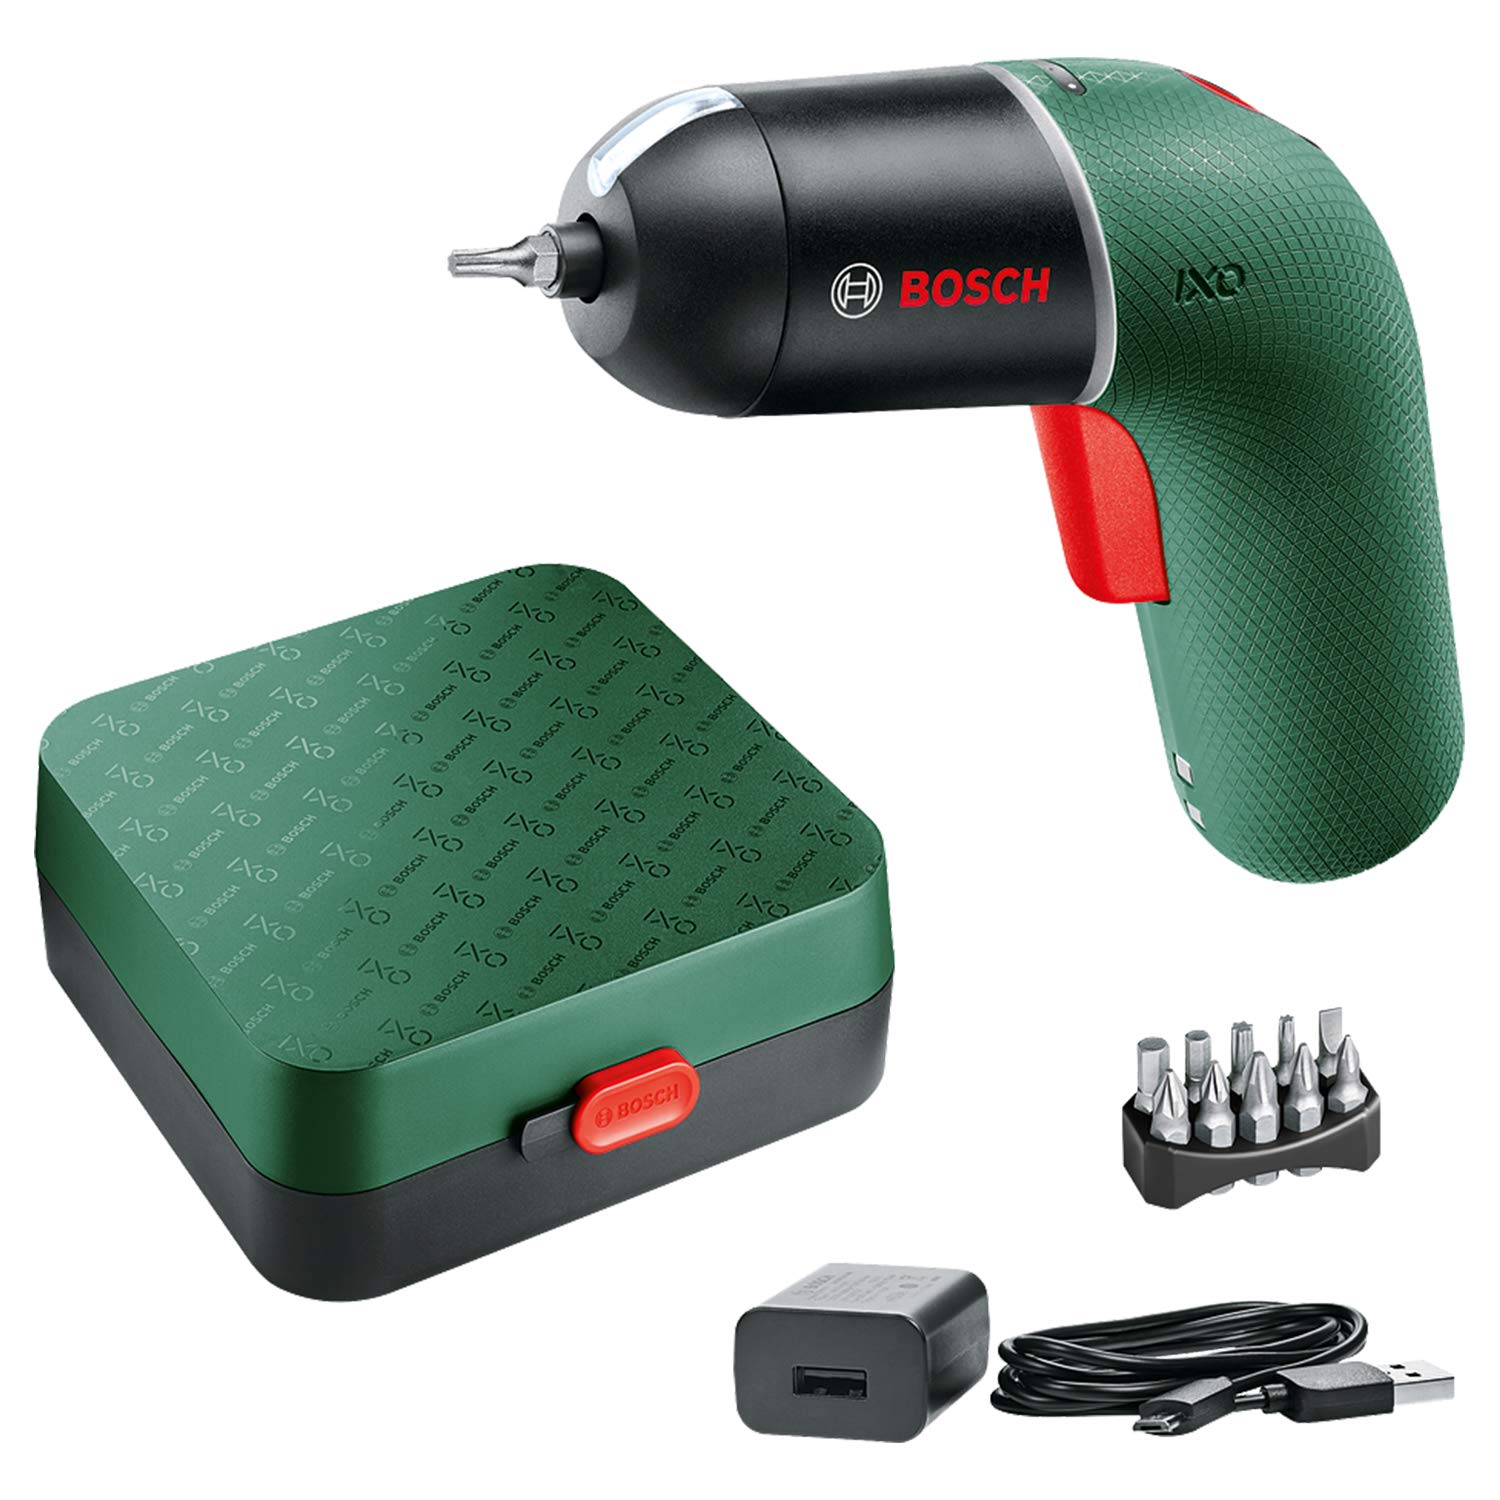 Bosch Home and Garden Bosch Akkuschrauber IXO (6. Generation, grün, variable Drehzahlsteuerung, über Micro-USB-Kabel aufladbar, in Aufbewahrungskasten)